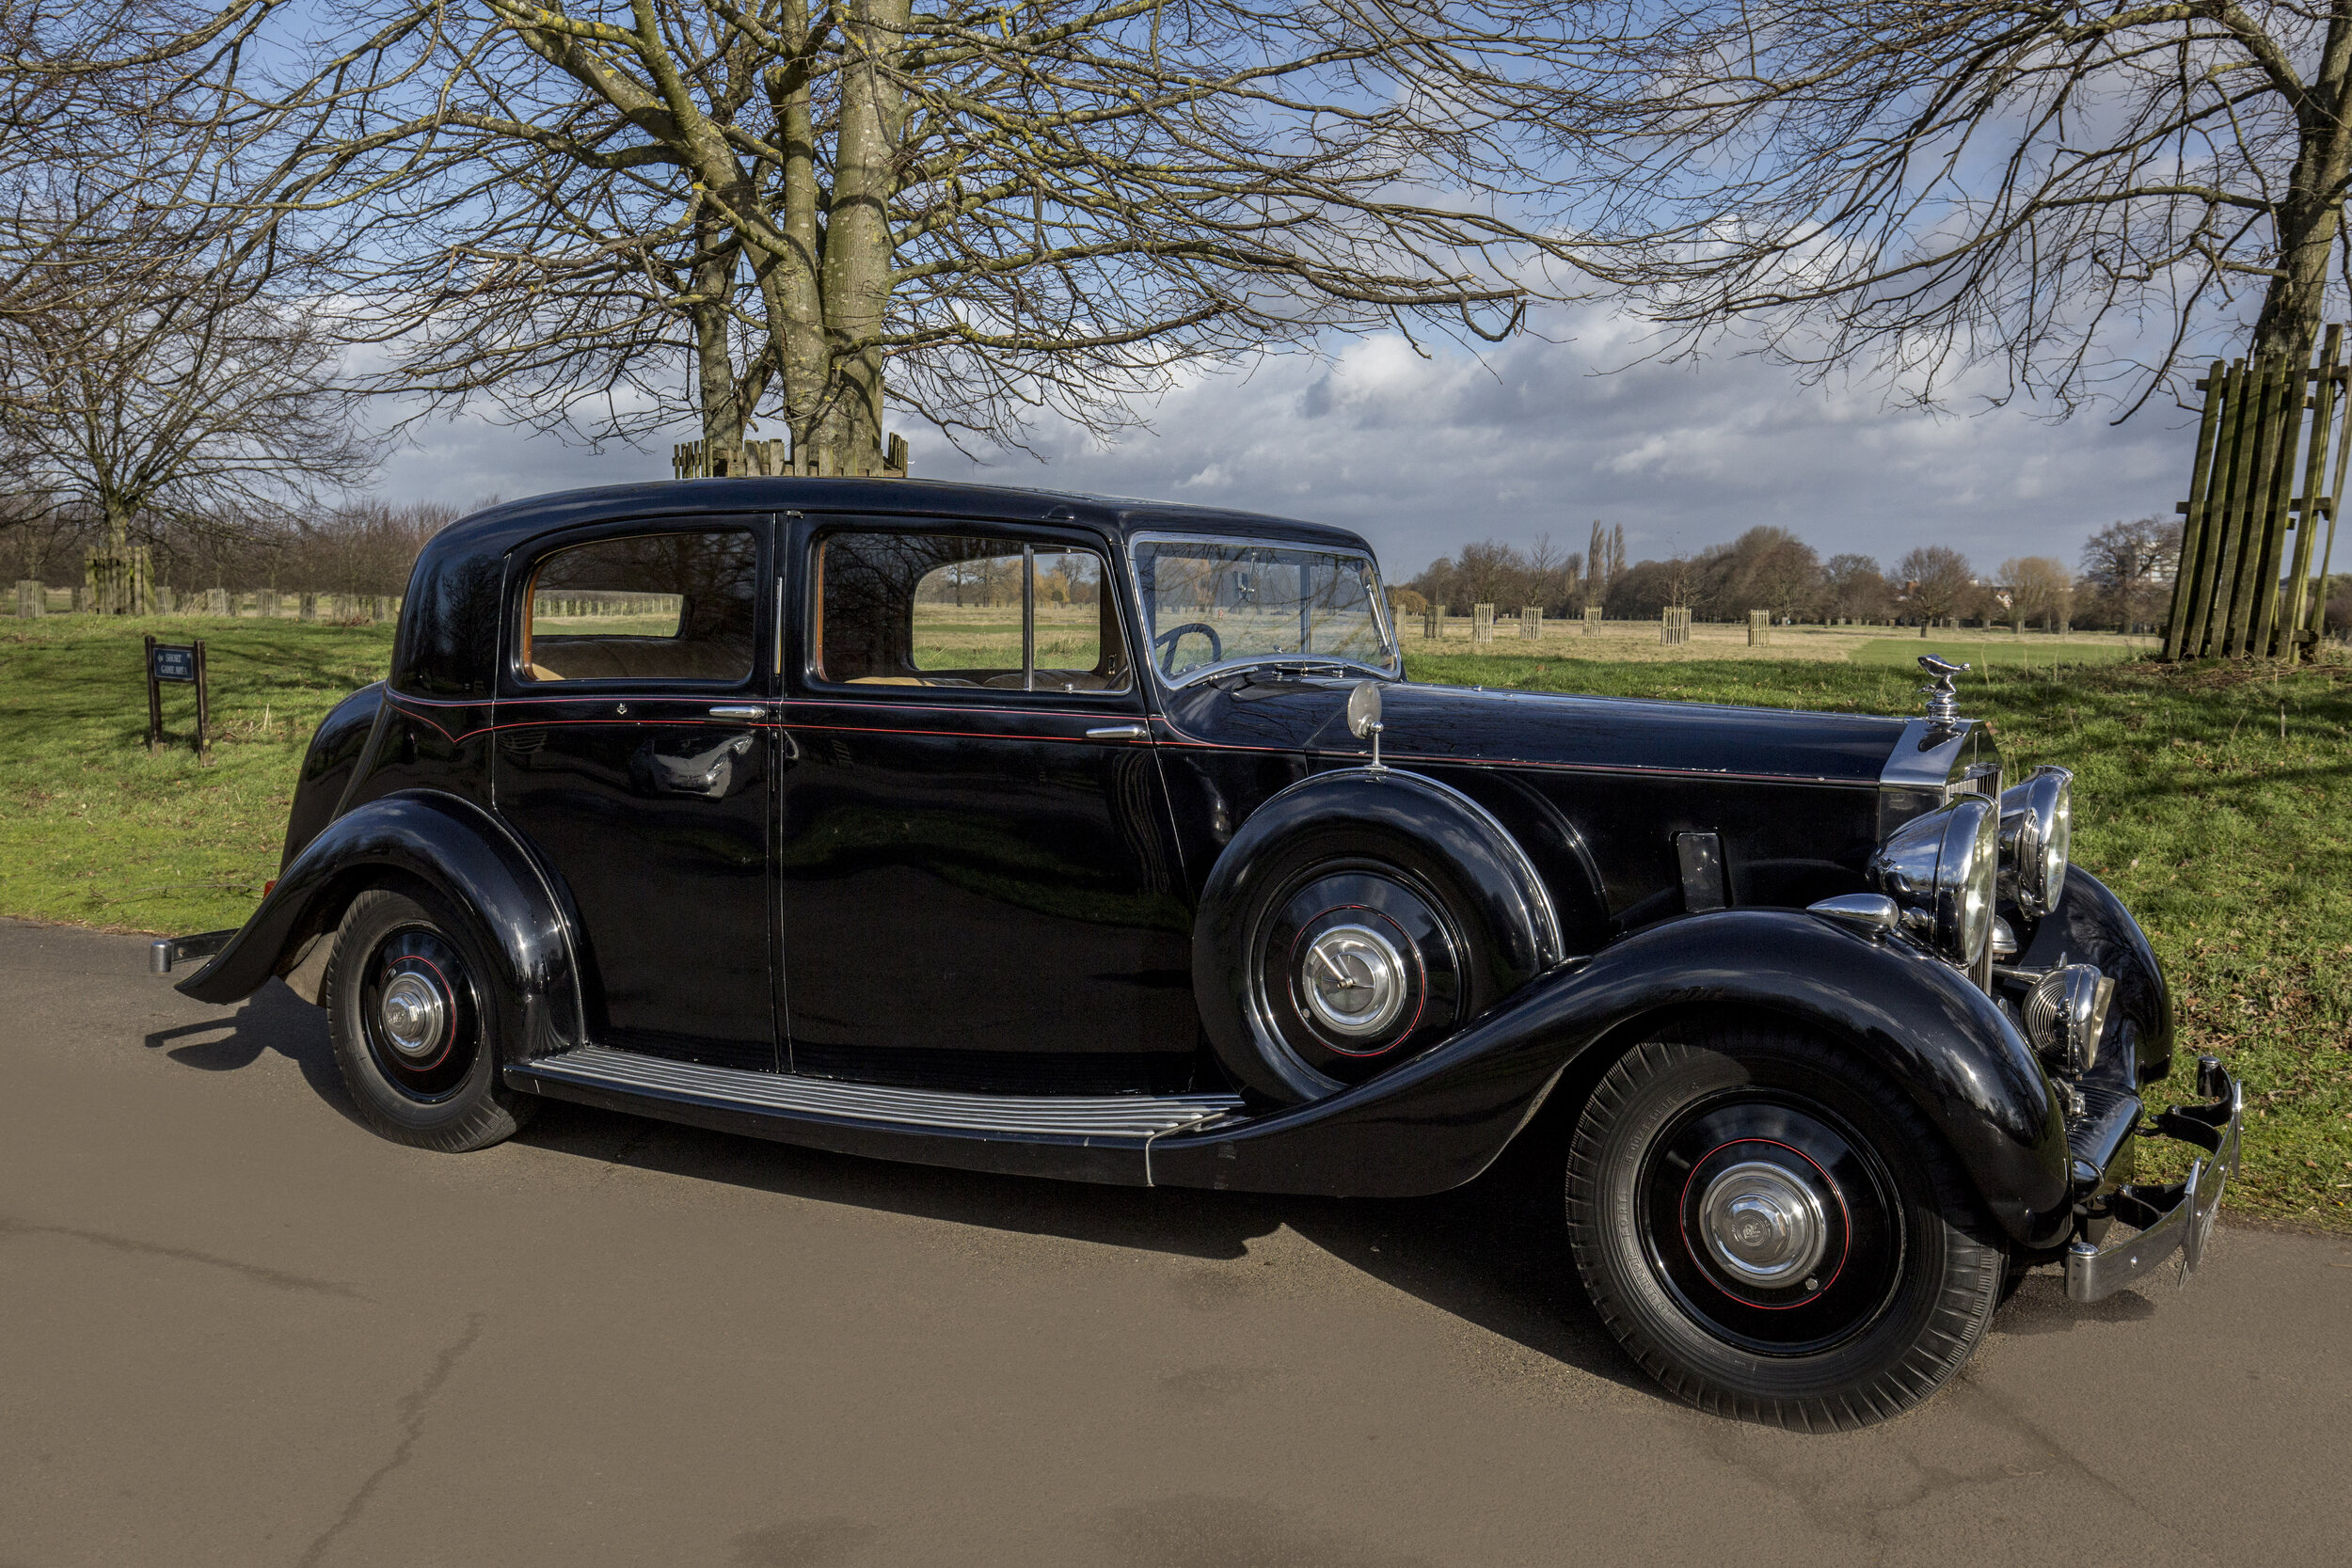 1939 Rolls Royce Wraith